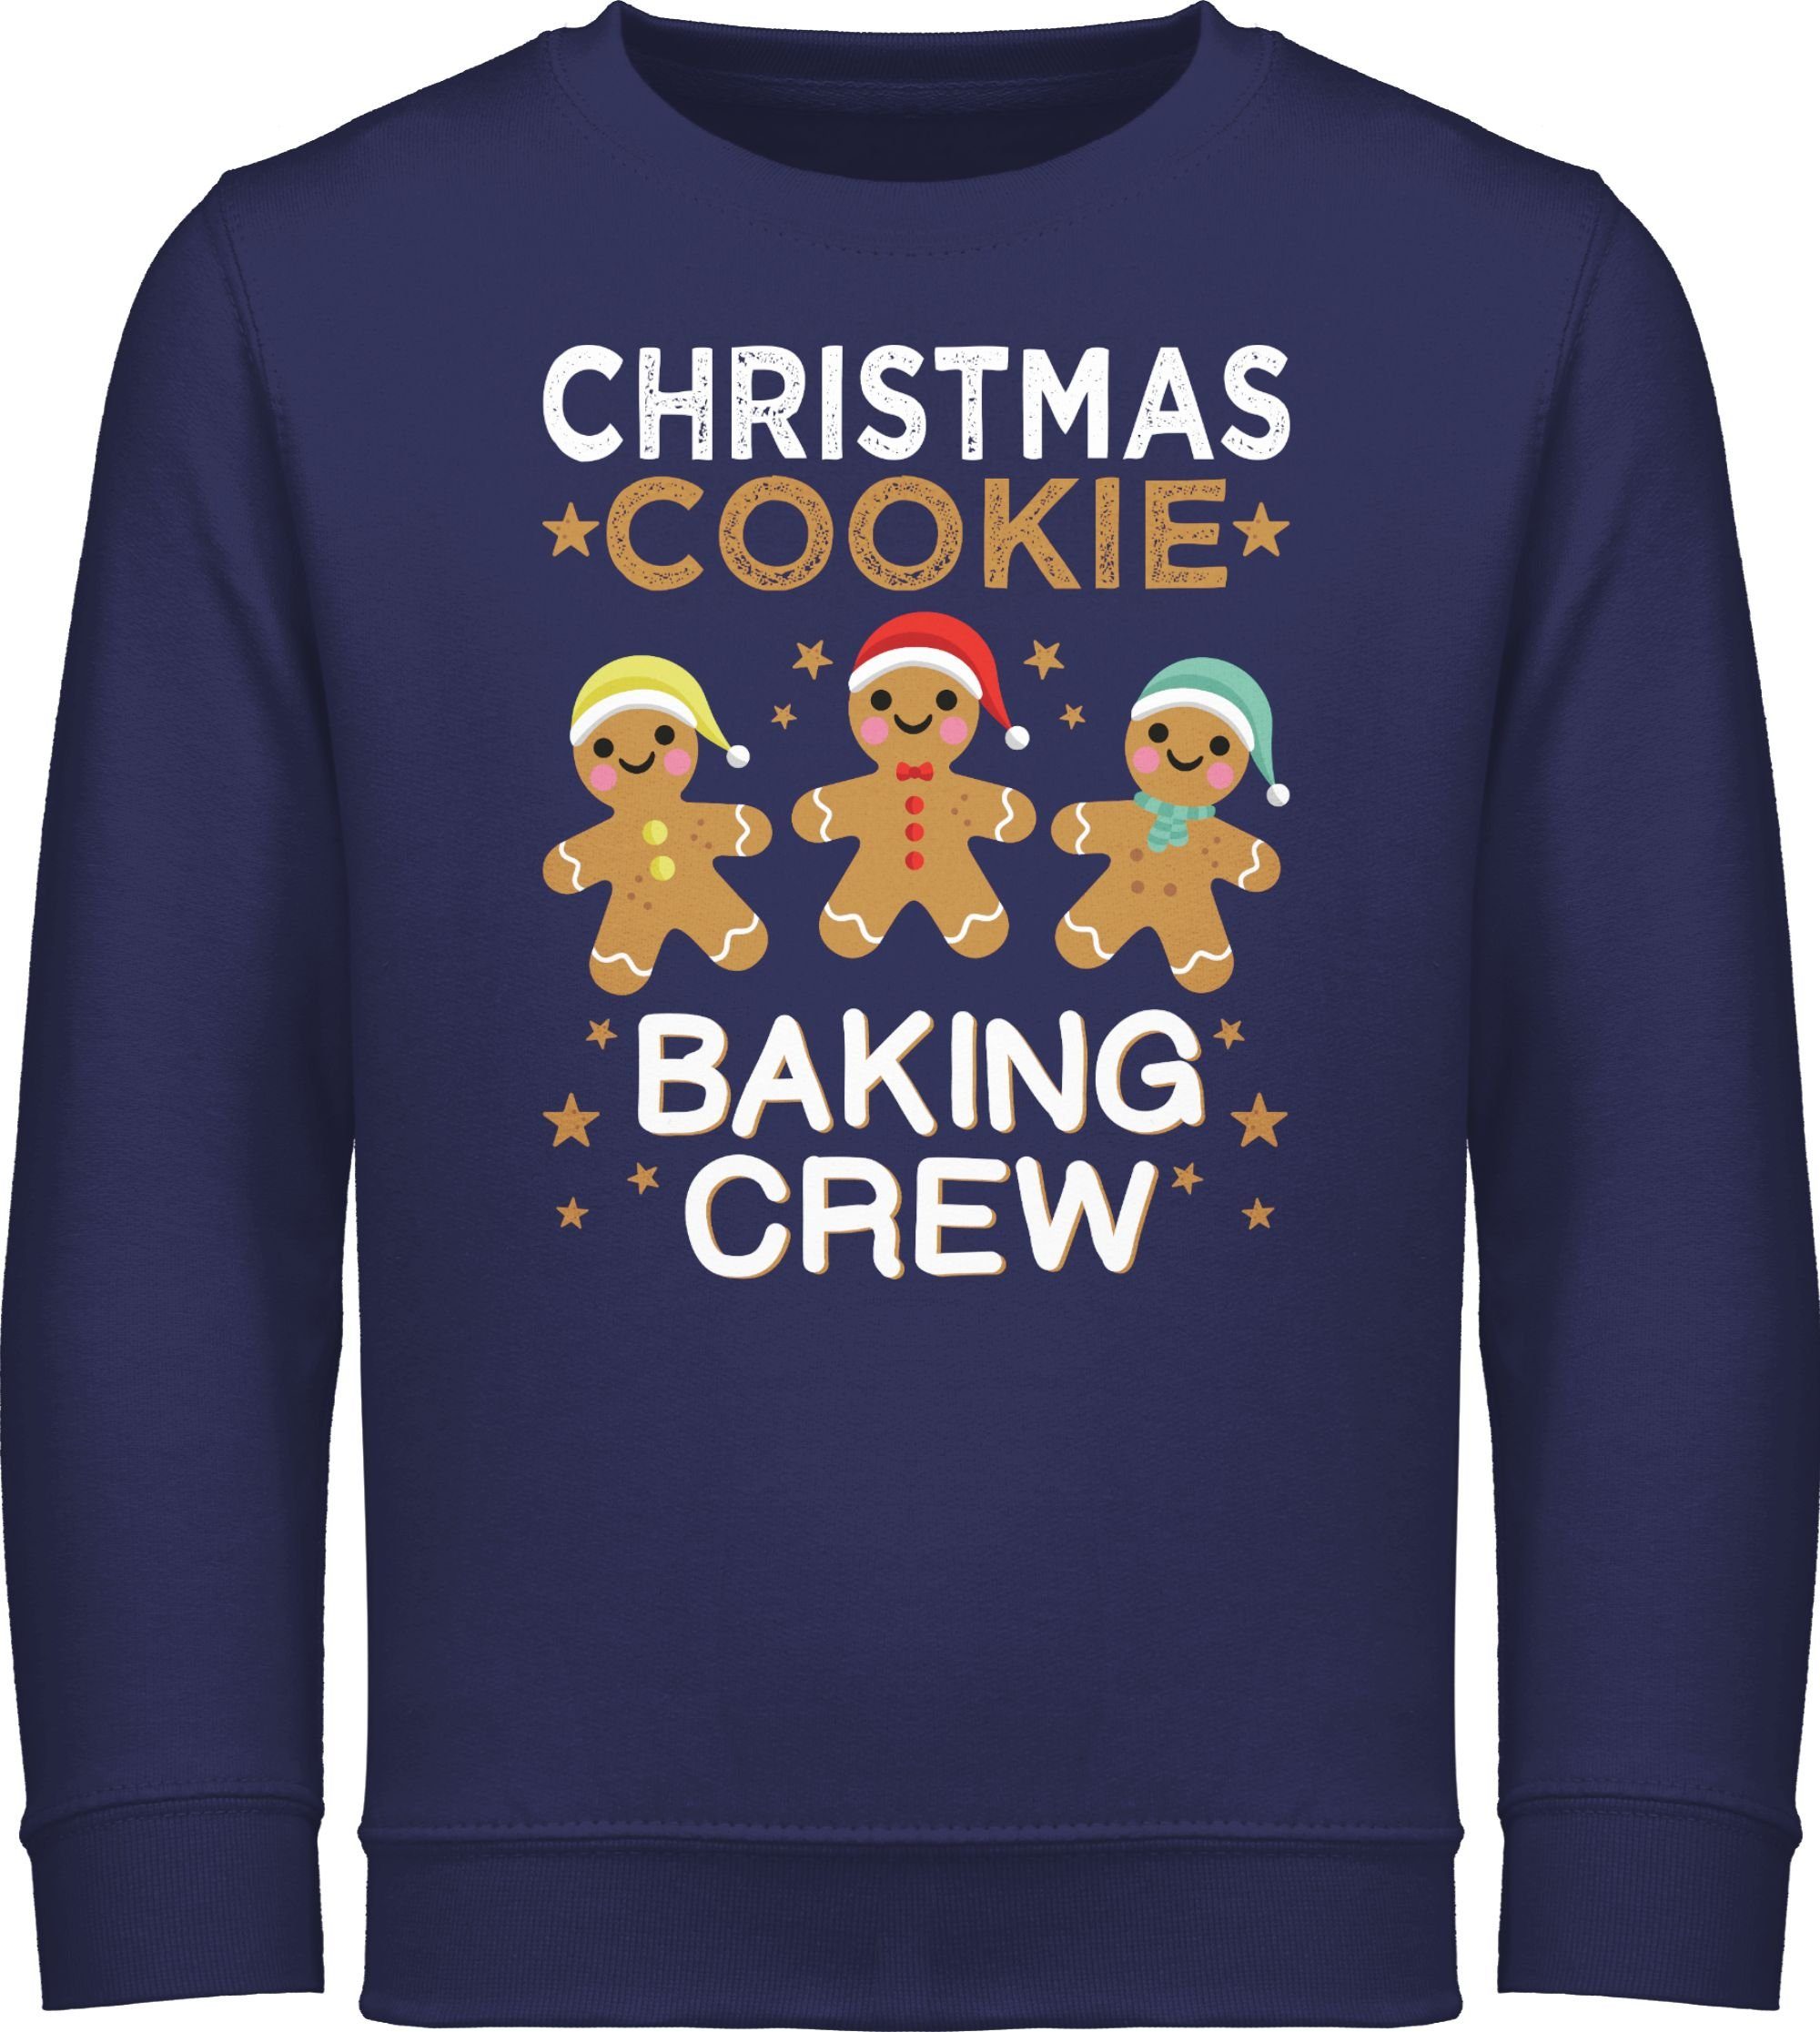 Shirtracer Sweatshirt Christmas Cookie Baking Crew Lebkuchenmännchen Weihnachten Kleidung Kinder 1 Navy Blau